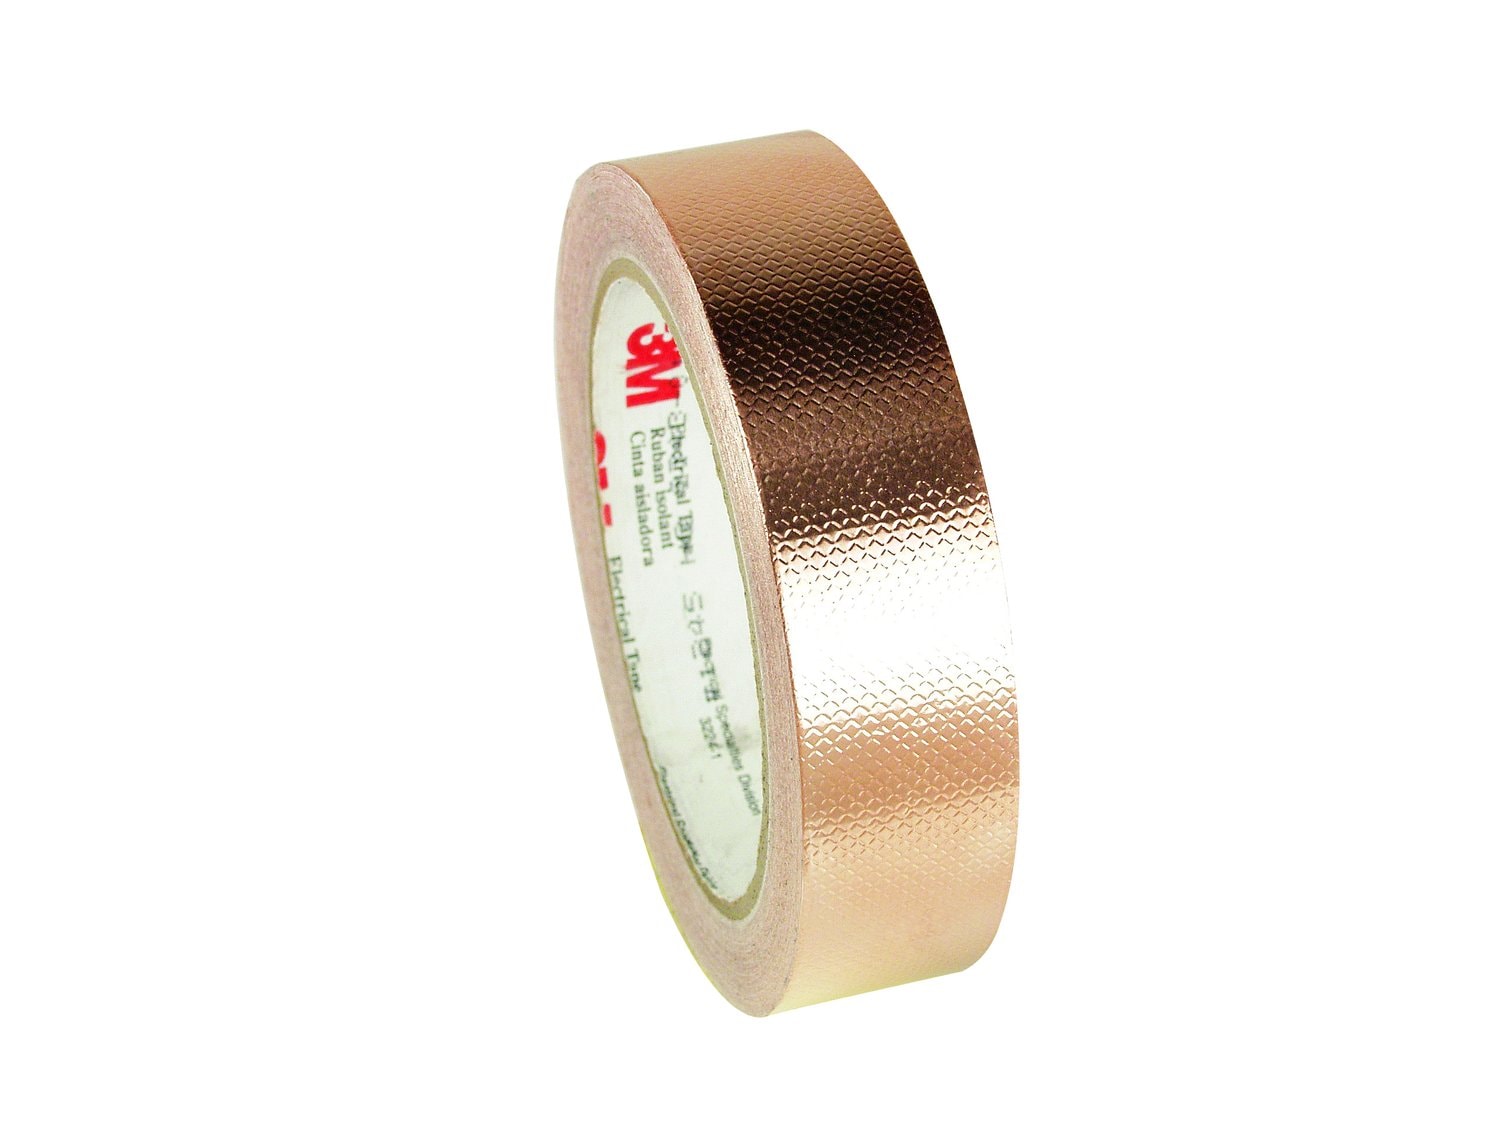 7010304004 - 3M Embossed Copper Foil EMI Shielding Tape 1245, 2 in x 18 yds, 3 in
Paper Core, 5 Rolls/Case